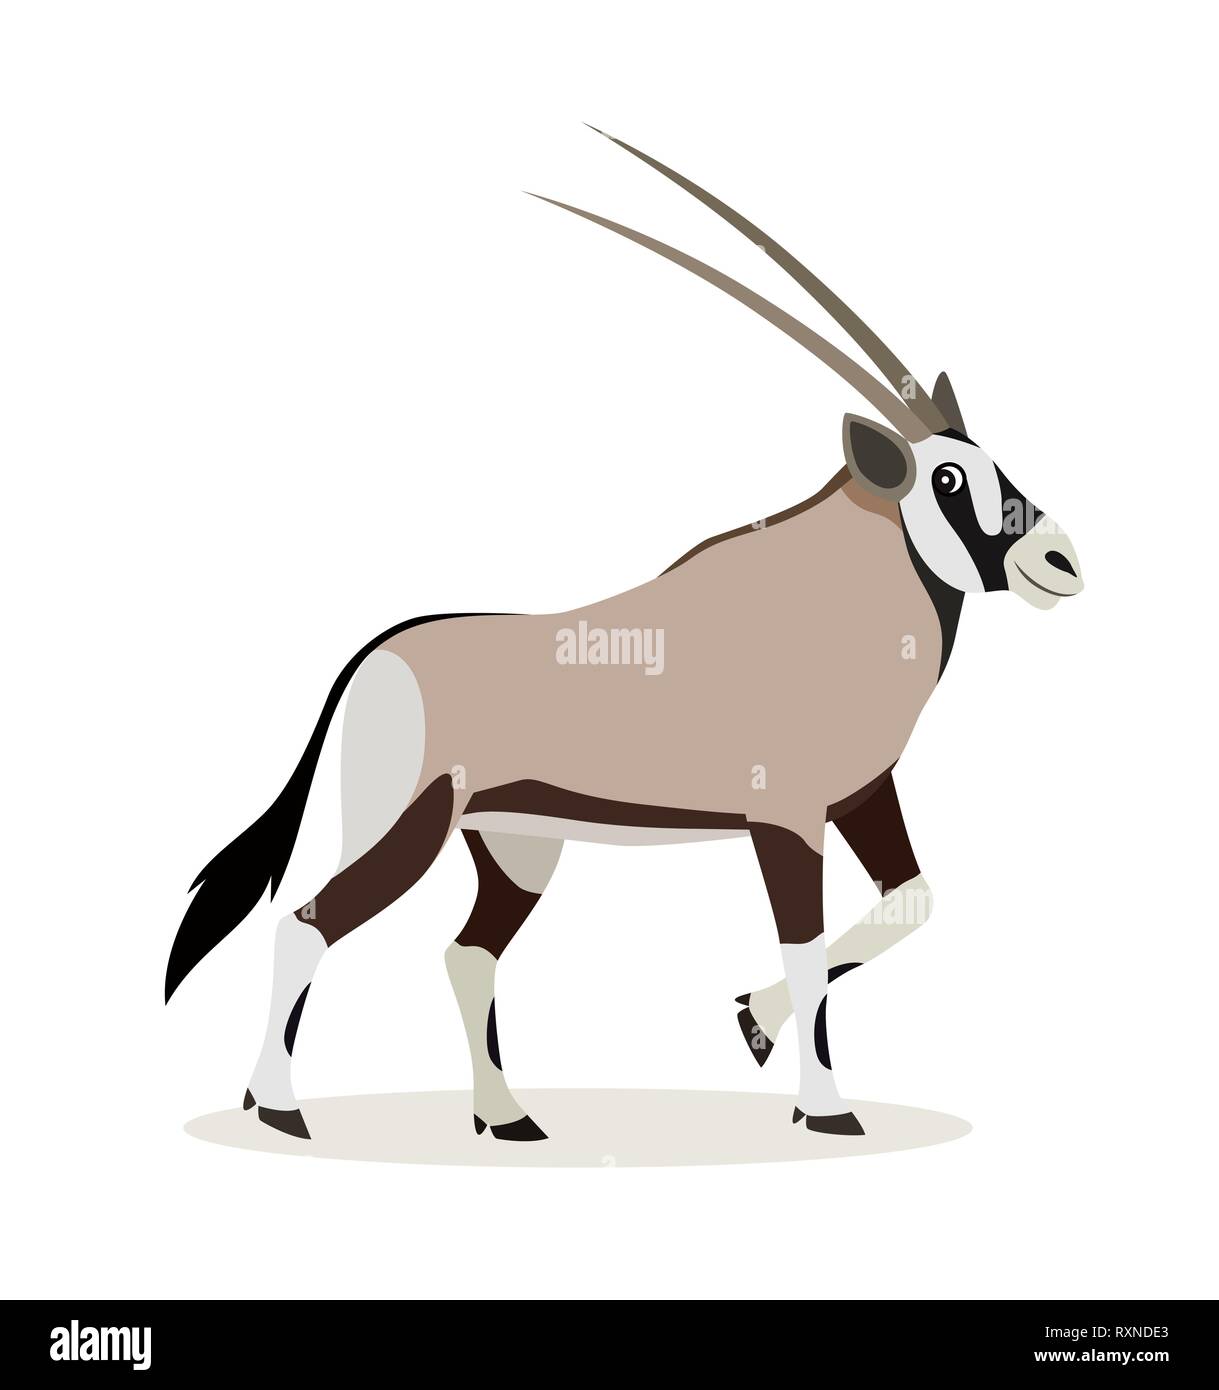 Afrikanische Tier, niedliche Oryx Antilopen, Gazellen auf weißem Hintergrund, Vektor Stock Vektor